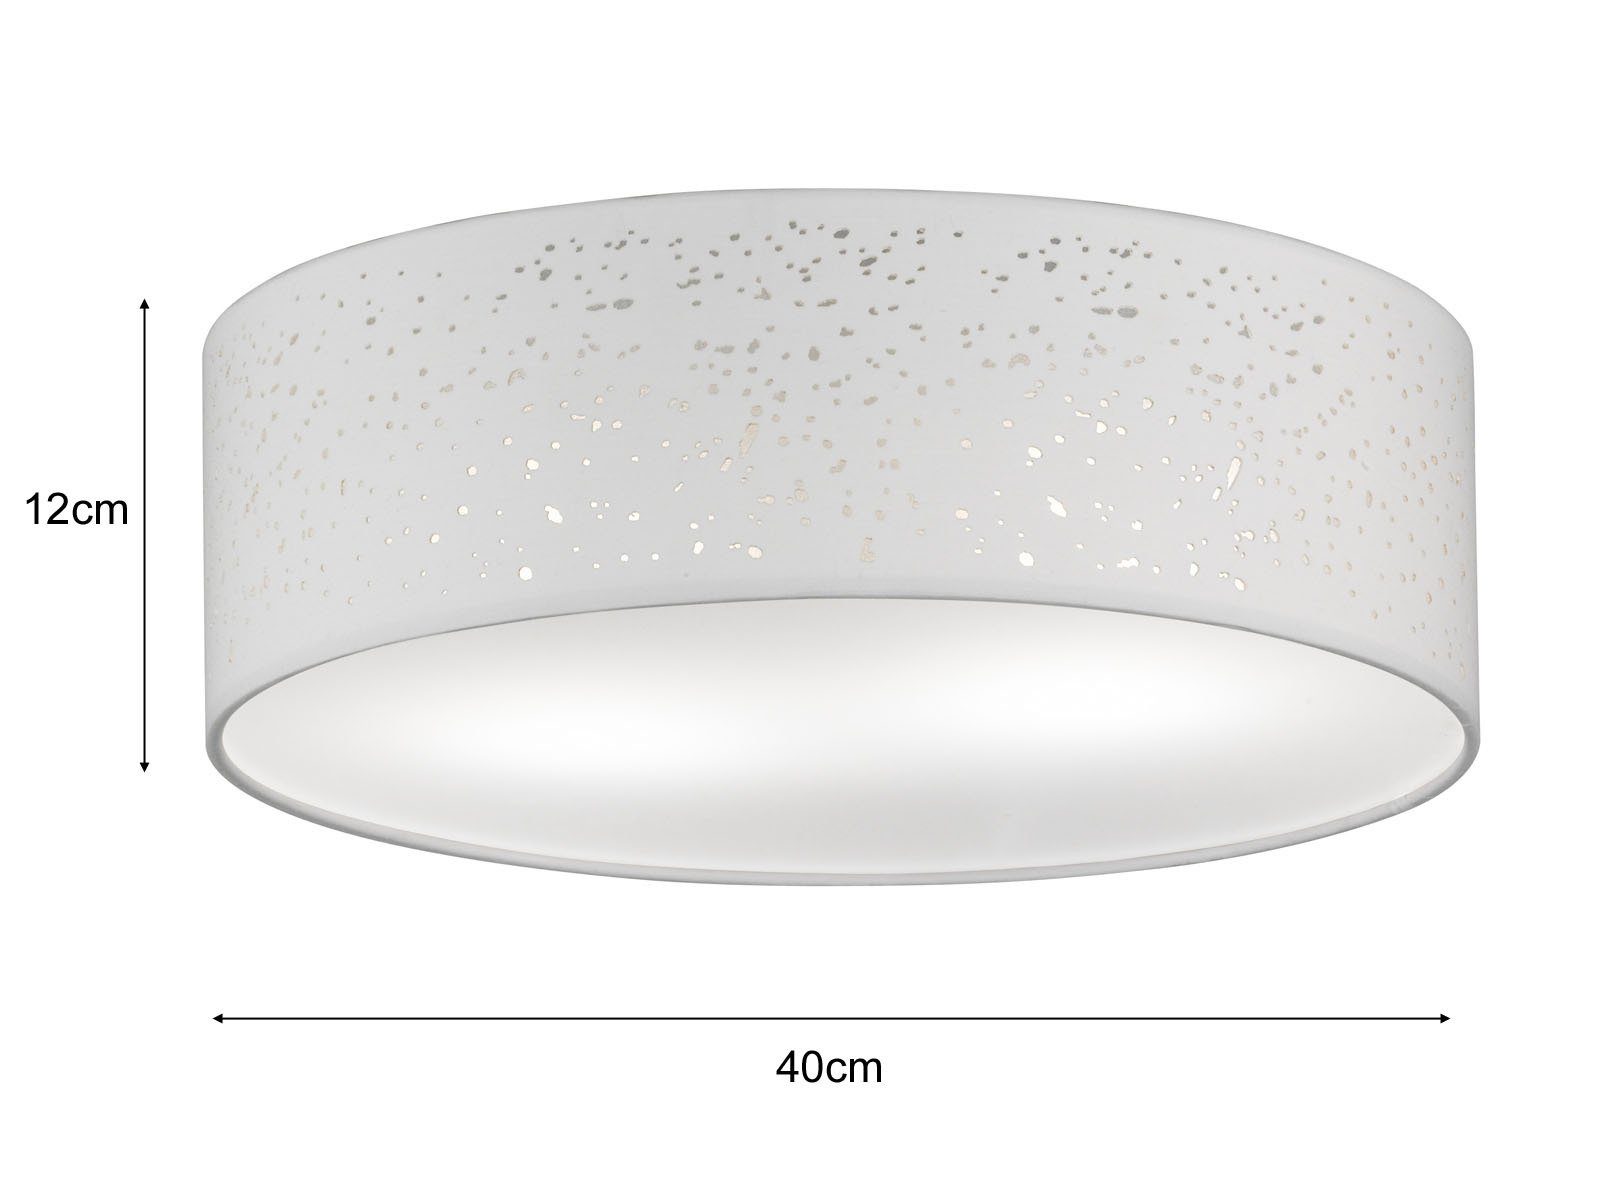 Ø Stoff-Lampe meineWunschleuchte Deckenleuchte, 40cm Warmweiß, Designklassiker mit LED Dimmfunktion, Weiß wechselbar, flach Lampenschirm Decke LED